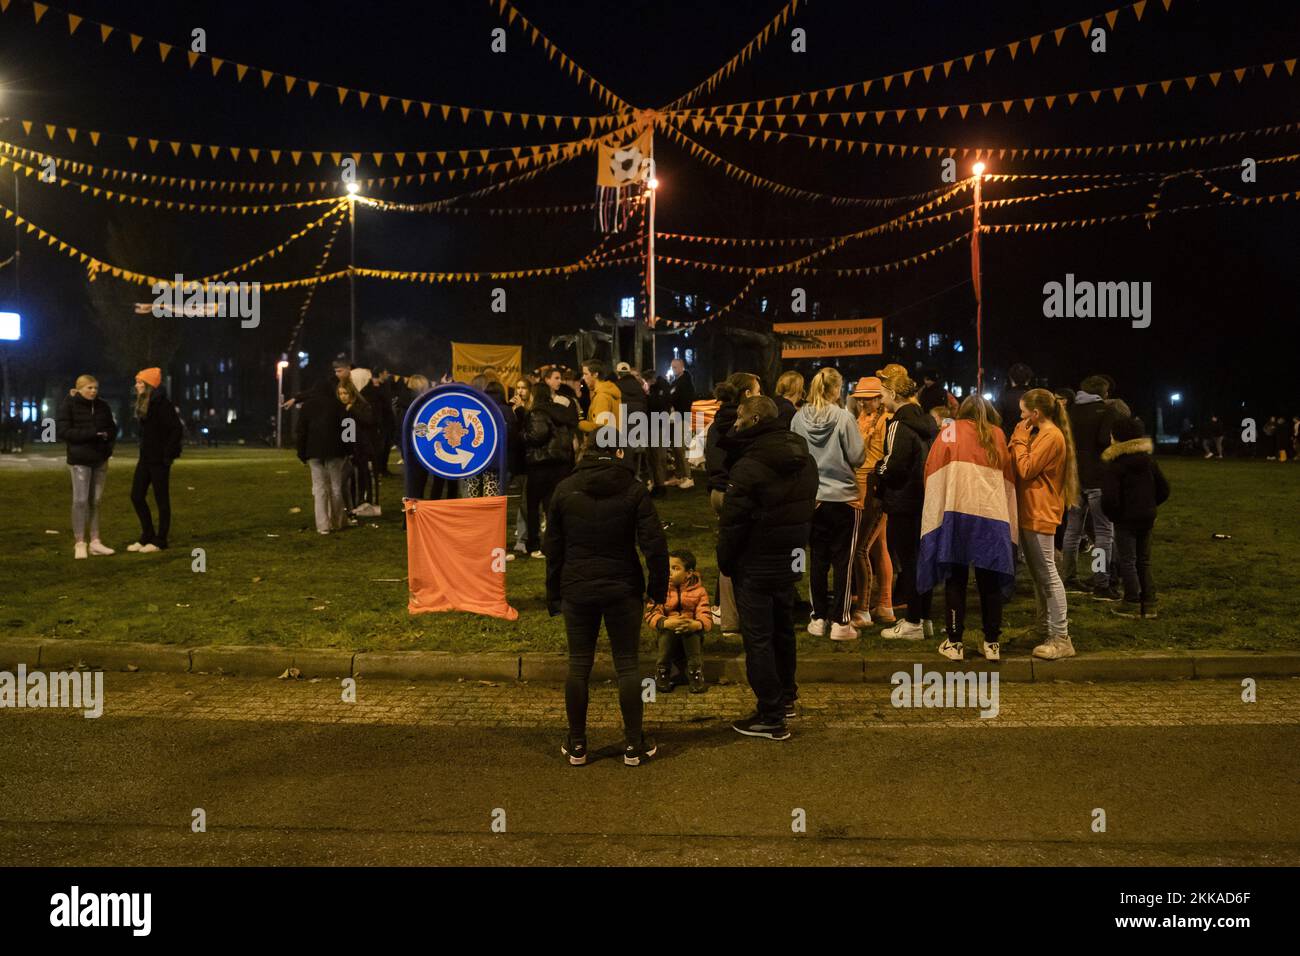 APELDOORN - les fans de football se sont réunis à l'Oranjerotonde. Le rond-point du Laan van Maten, dans le quartier de Maten, est de plus en plus connu comme un lieu de rassemblement pour les fans de football, qui se rassemblent là après les matchs de l'équipe nationale néerlandaise. ANP JEROEN JUMELET pays-bas sortie - belgique sortie Banque D'Images